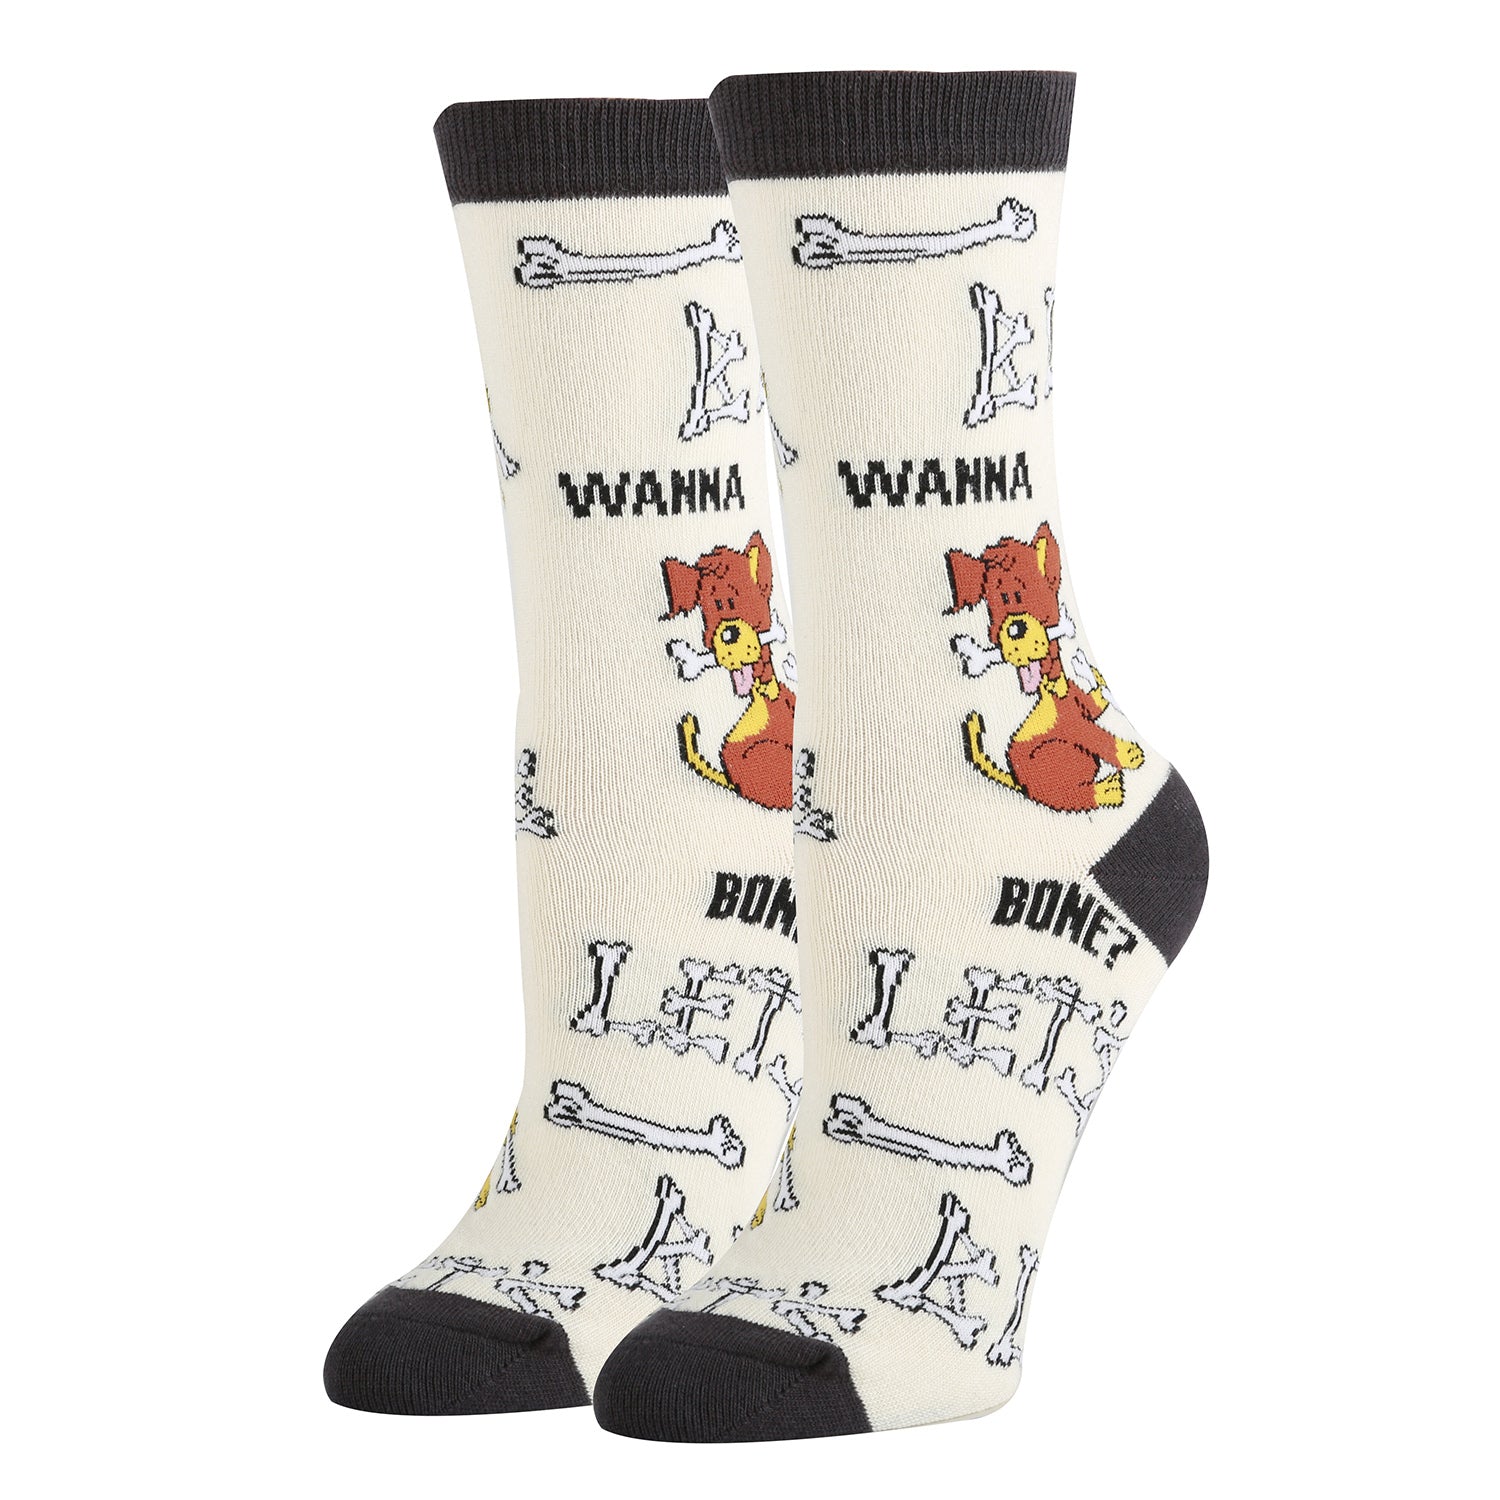 Magic Mushrooms Slipper Socks  Fuzzy Toadstool Socks - Cute But